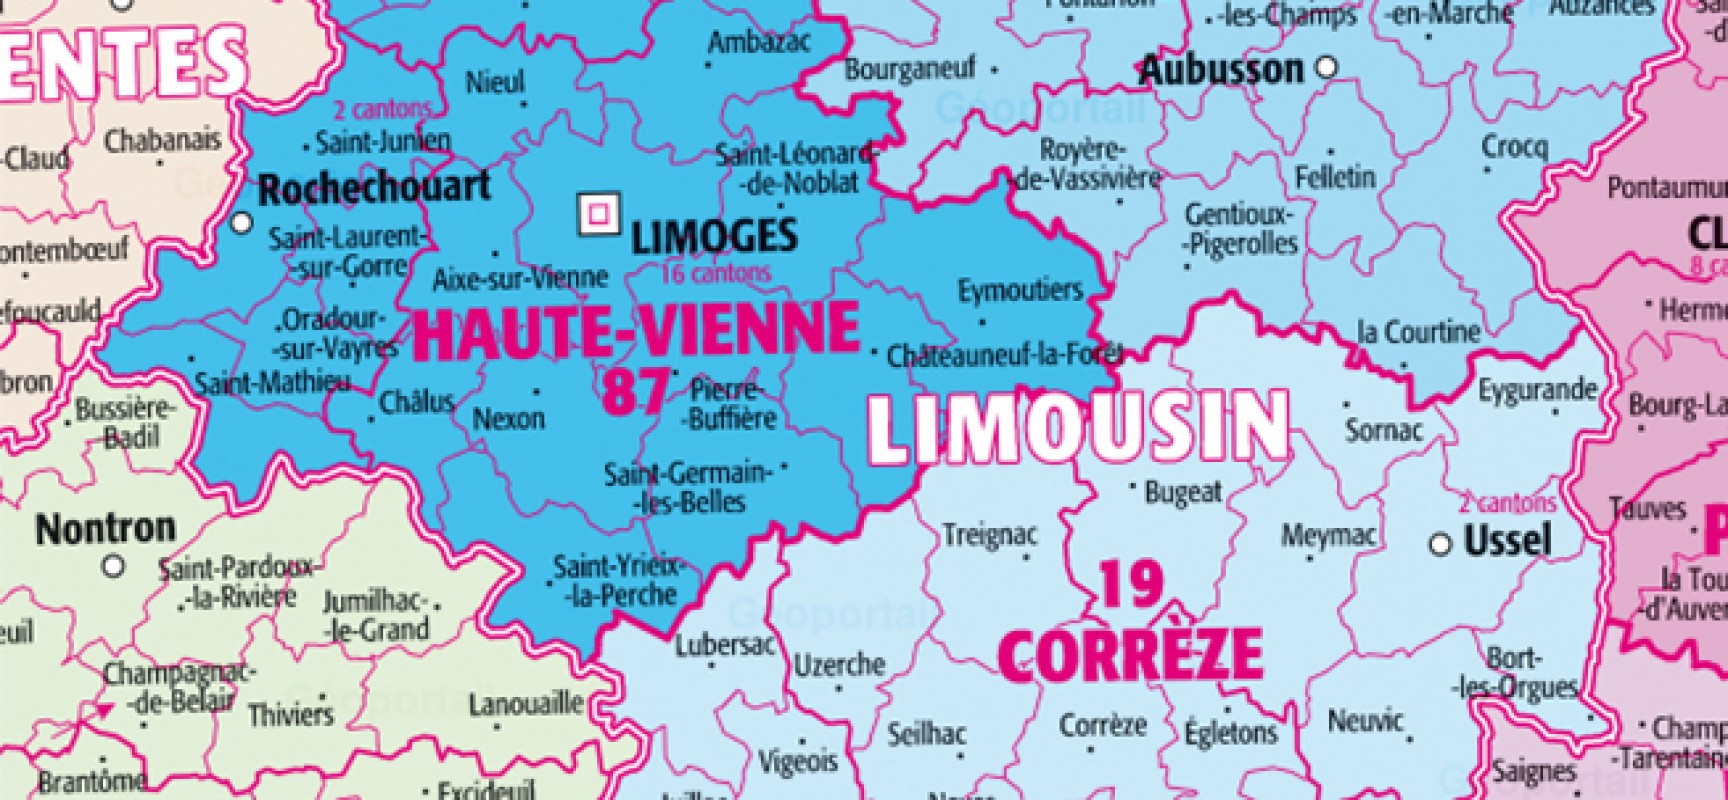 Le Limousin, une région où il fait bon vivre